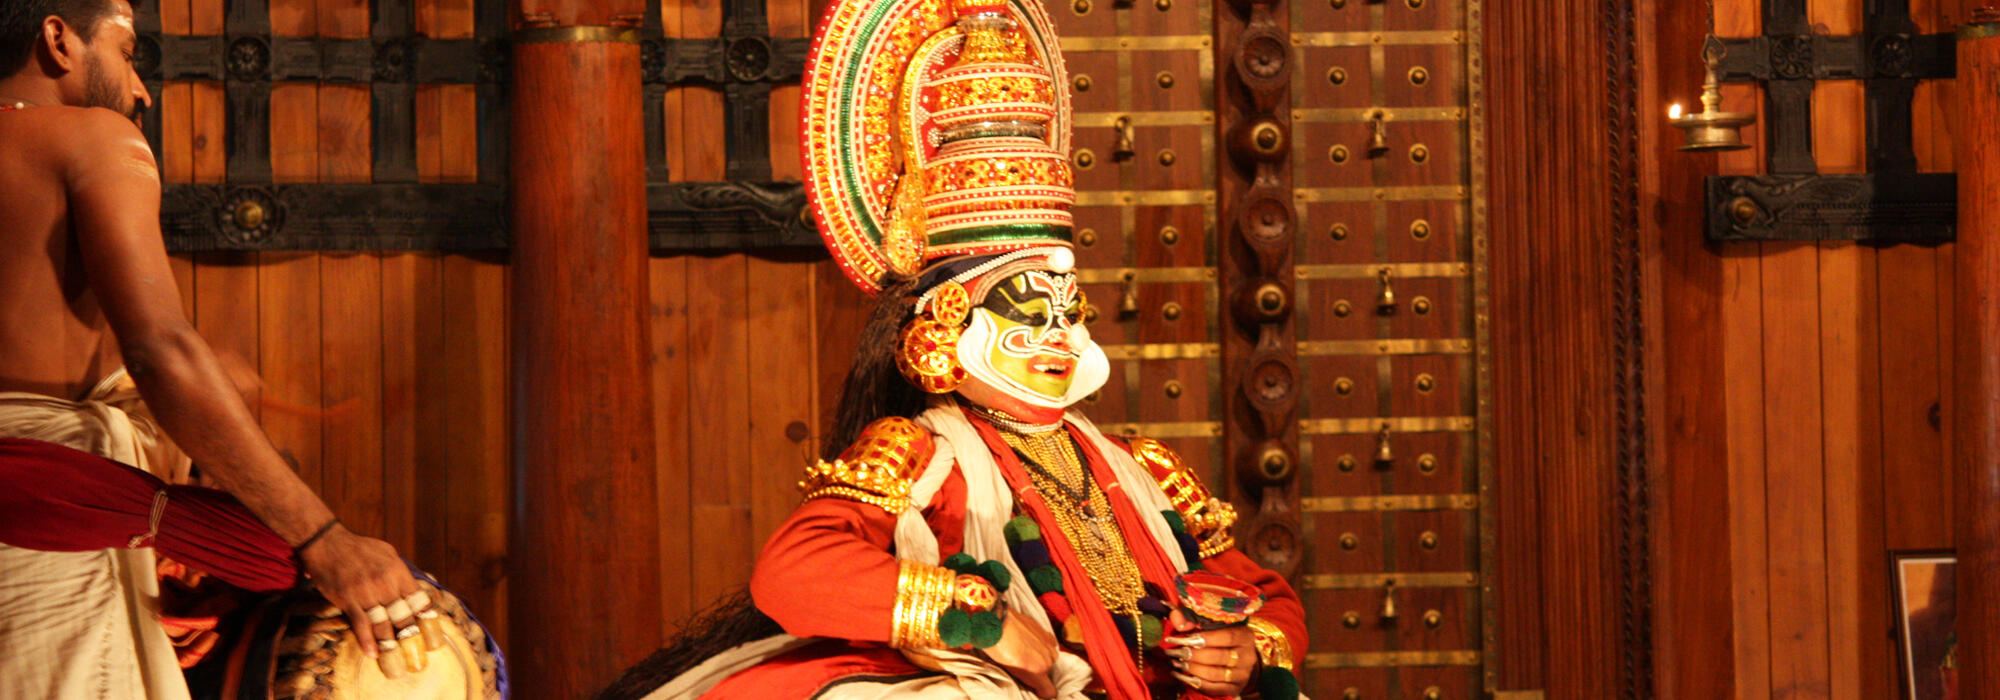 Kathakali, a dance form of Kerala